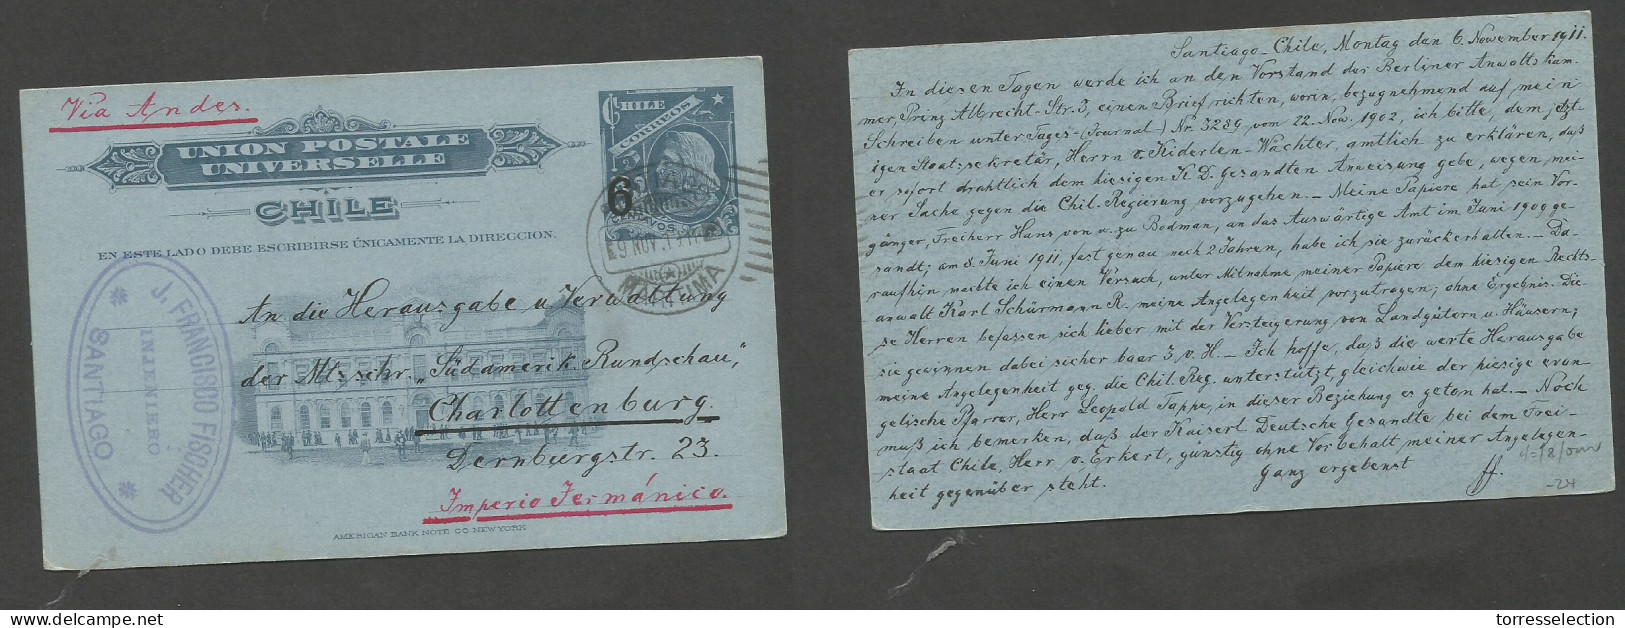 CHILE - Stationery. 1911 (6 Nov) Stgo - Germany, Charlottenburg. 6c Ovptd Stat Card. VF Used. Maritime Cancel. - Chili